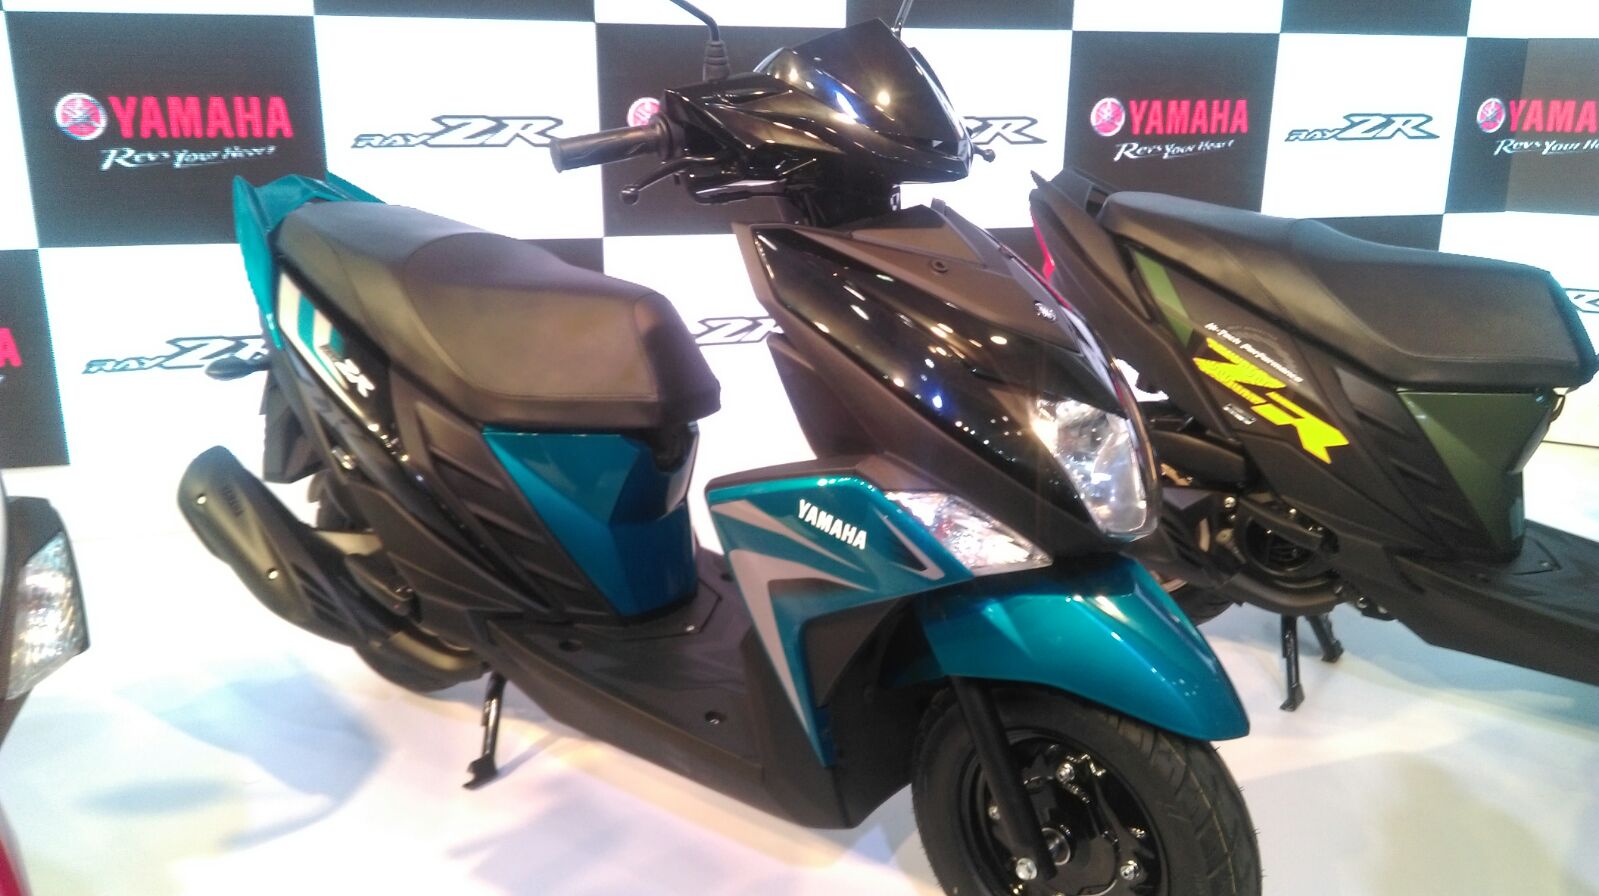 Yamaha Cygnus Ray-ZR at the Delhi Auto Expo